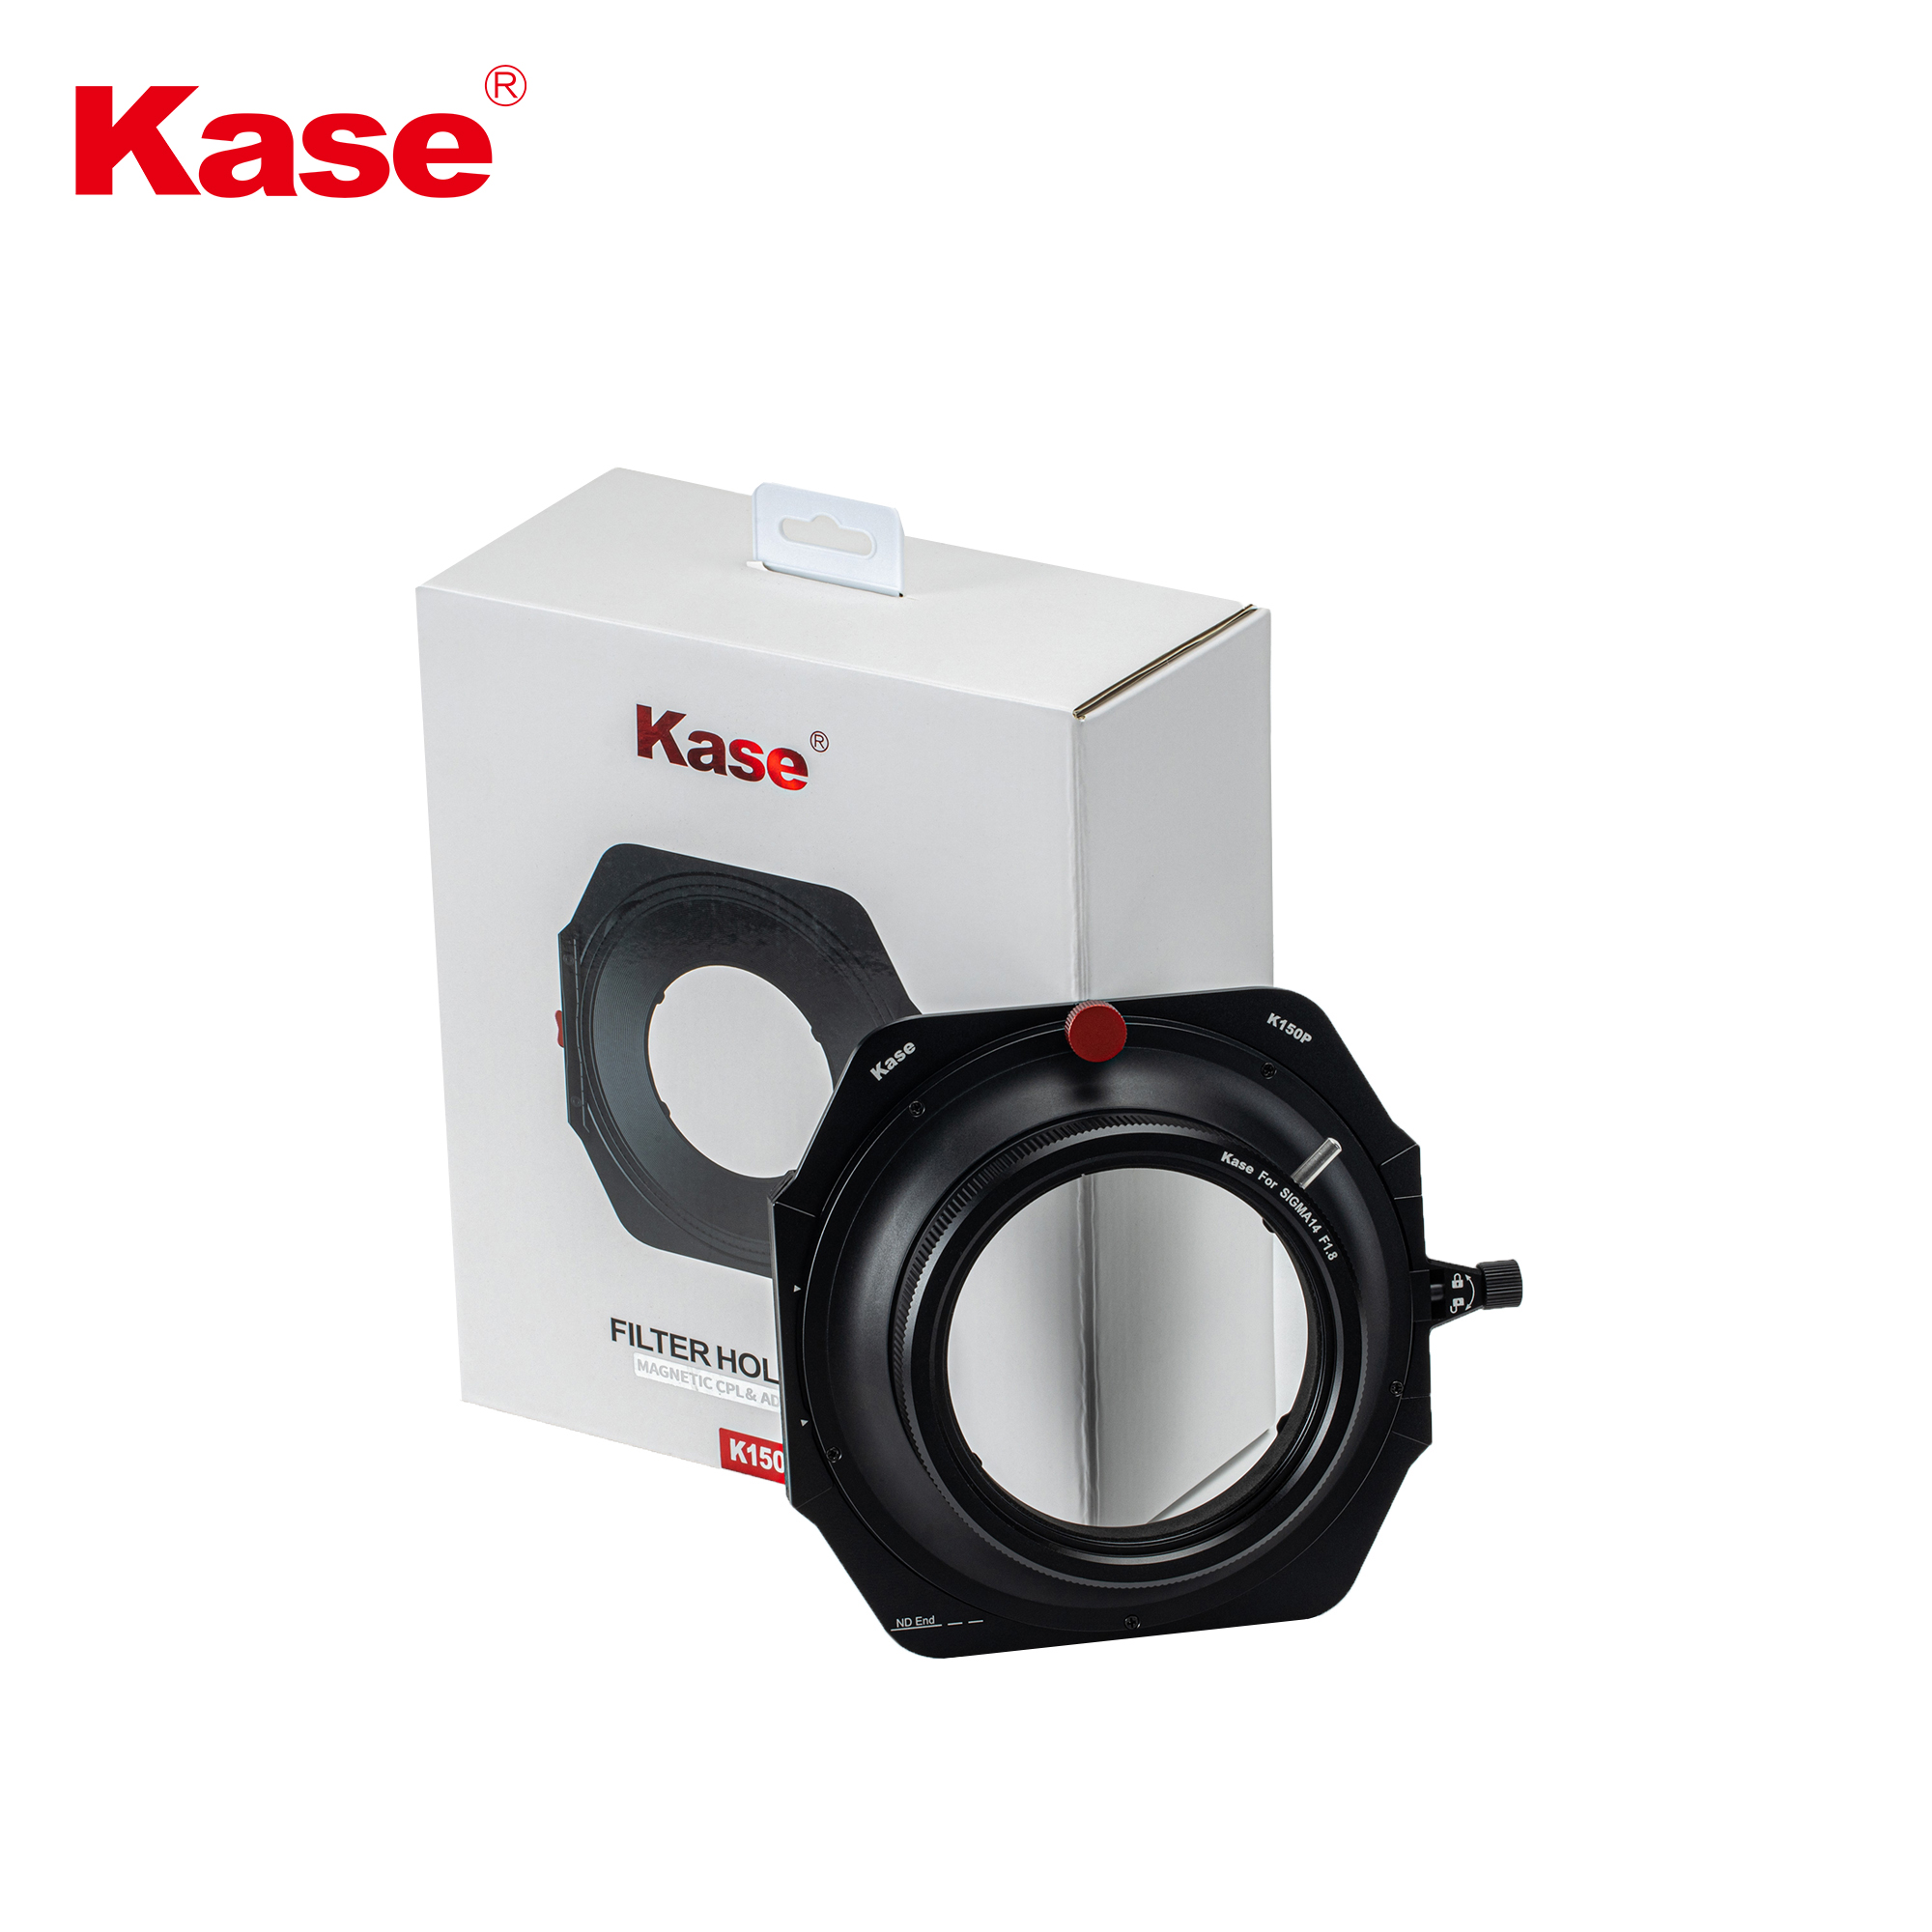 Kase K150P Filter Holder for Sigma 14mm Lens